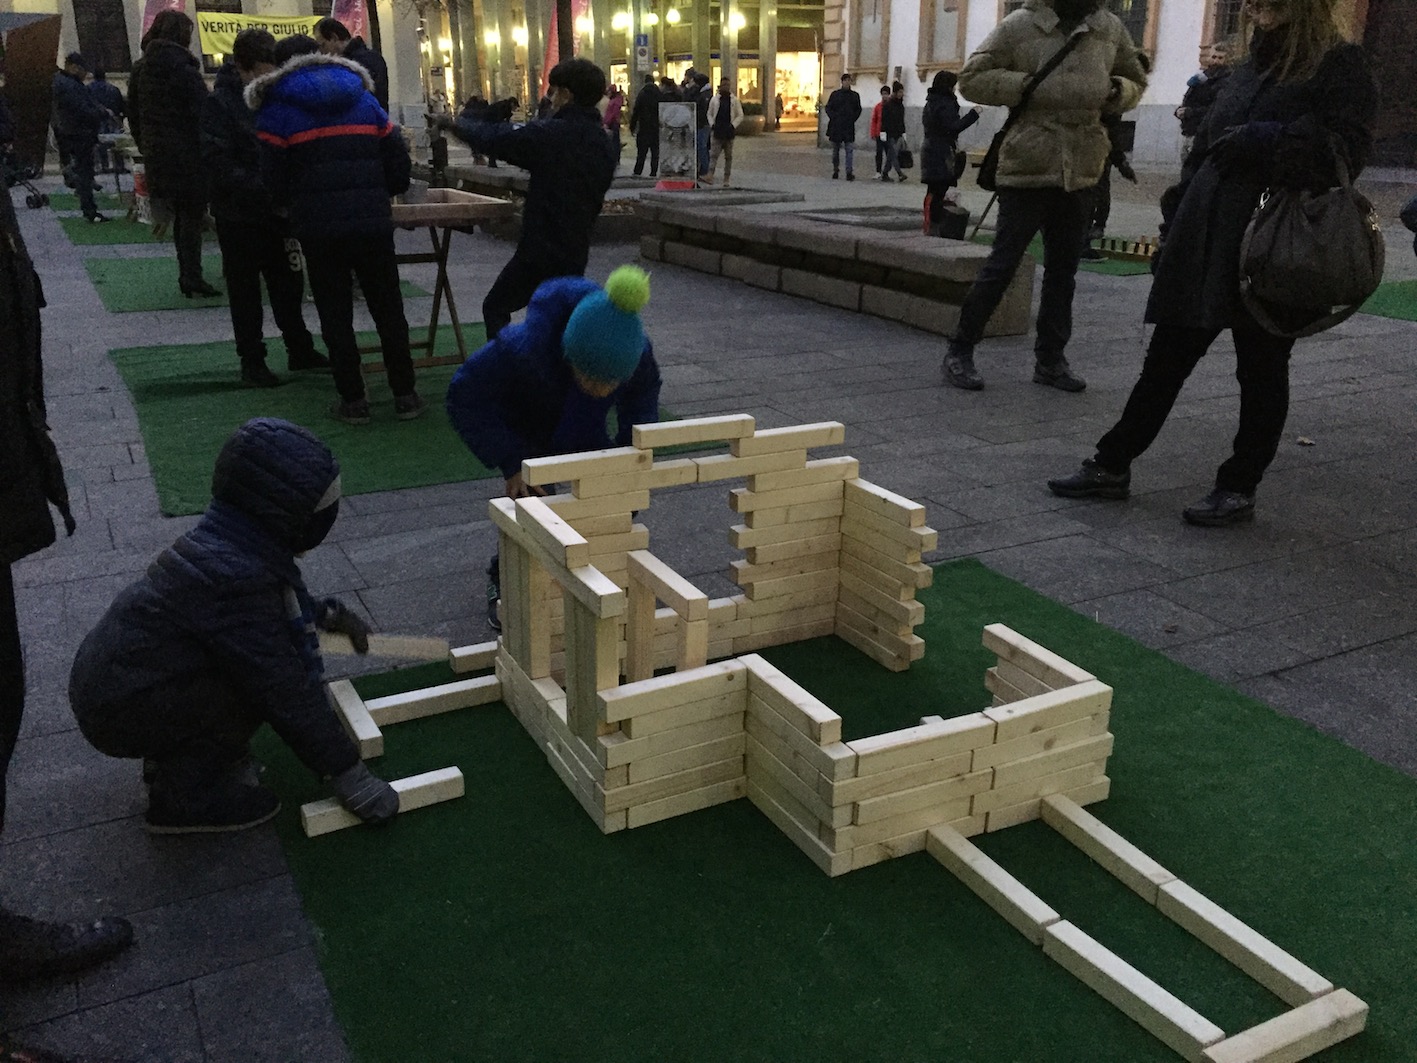 Piazza Matteotti, centro storico di Novara, animato con i giochi dei nonni